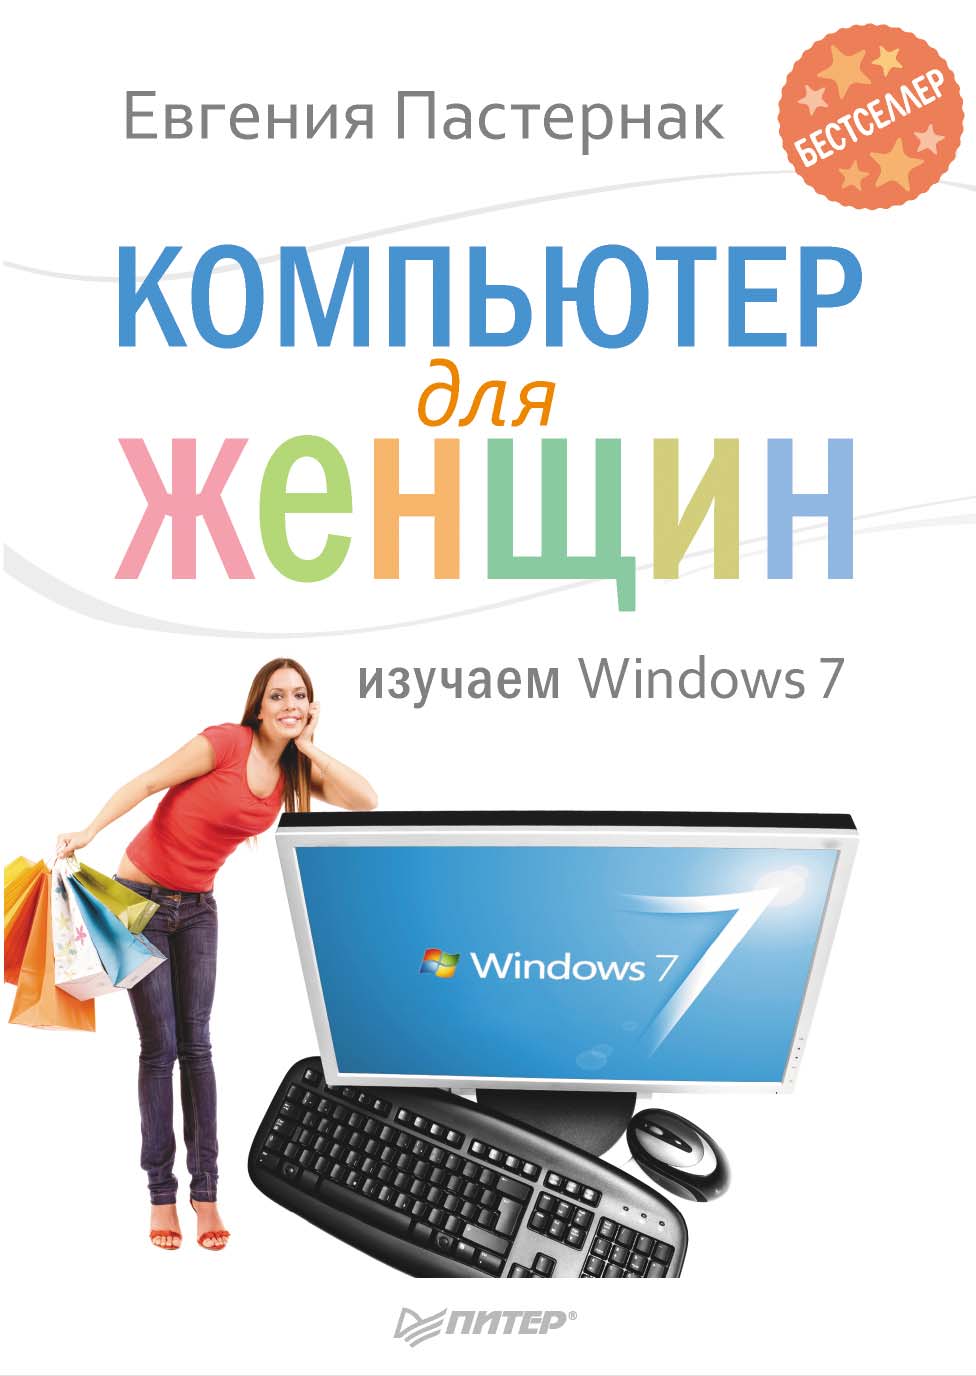 Книга  Компьютер для женщин. Изучаем Windows 7 созданная Евгения Пастернак может относится к жанру книги о компьютерах, ОС и сети. Стоимость электронной книги Компьютер для женщин. Изучаем Windows 7 с идентификатором 4956486 составляет 189.00 руб.